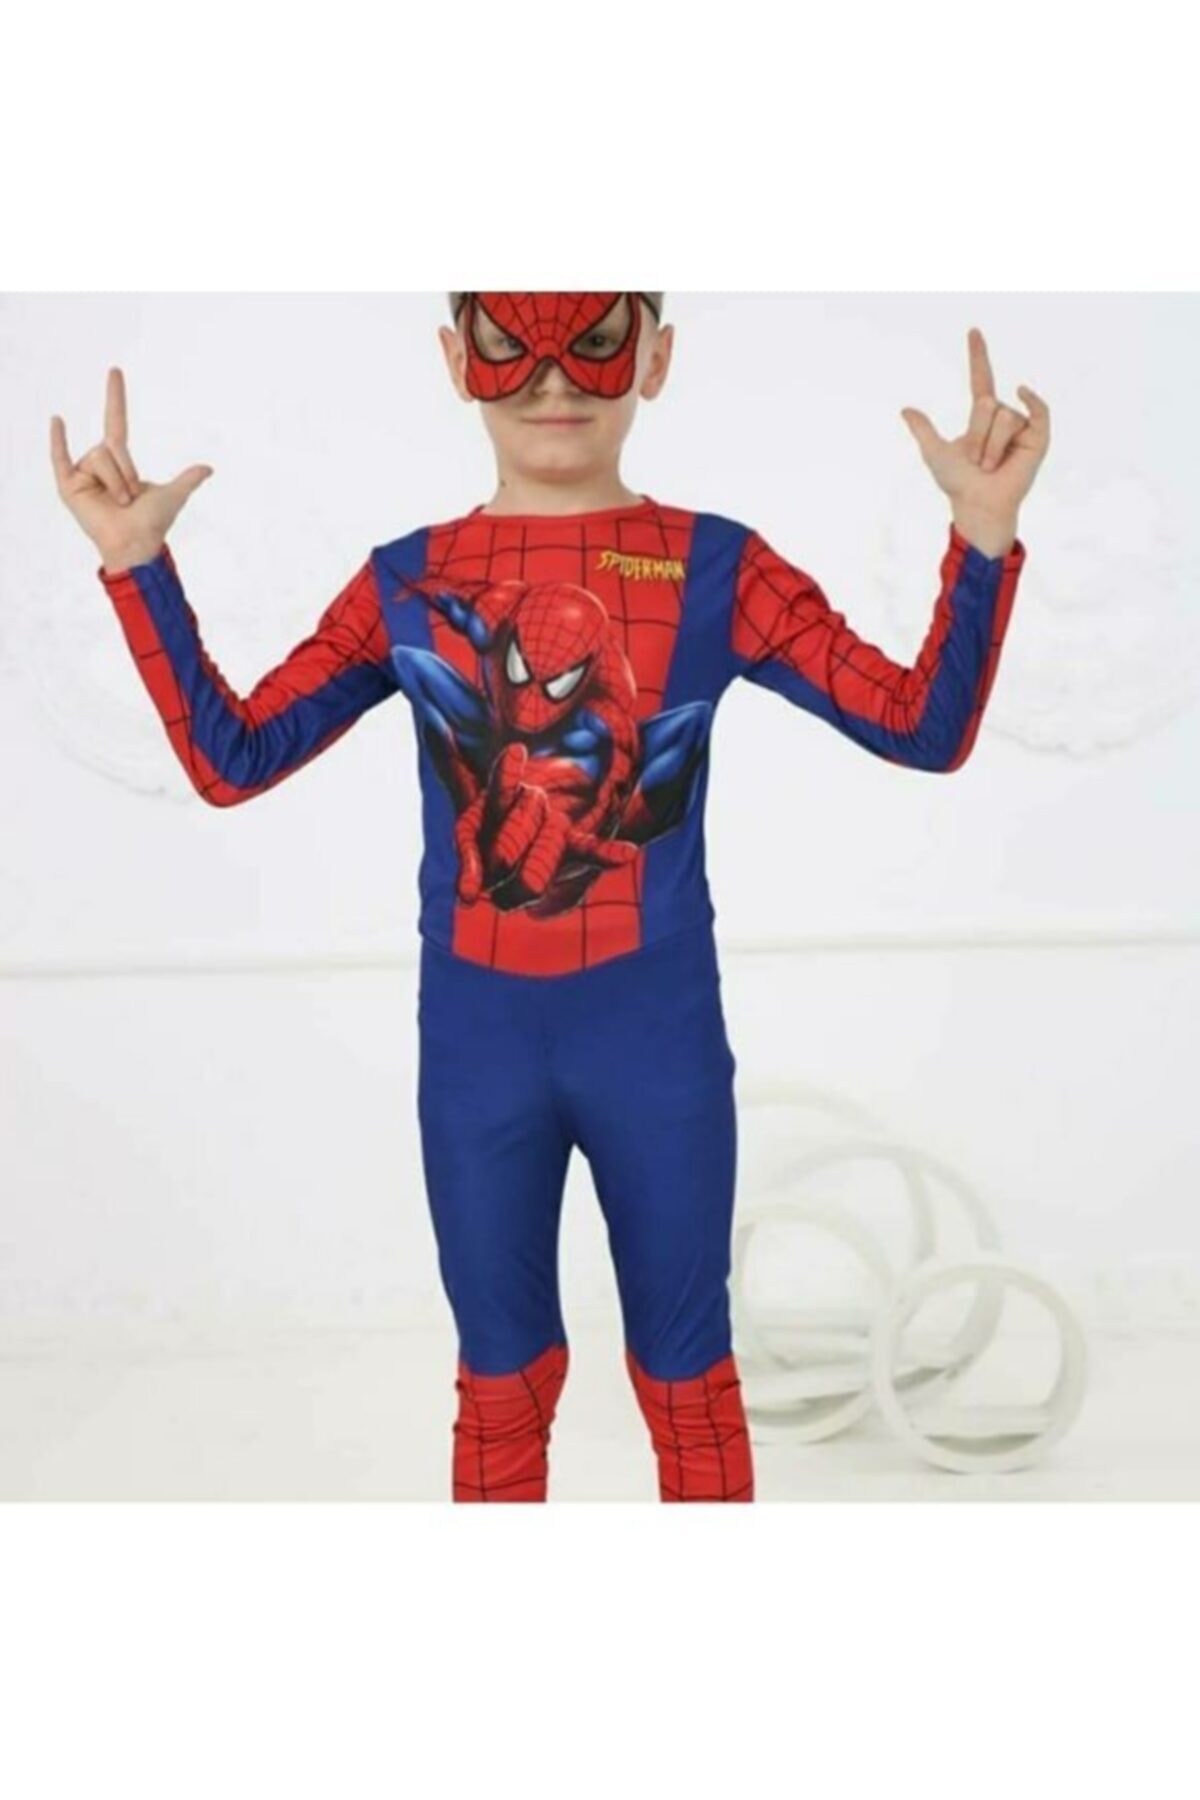 Erkek Çocuk Spiderman Kostümü Yeni Örümcek Adam Kostüm Maskeli